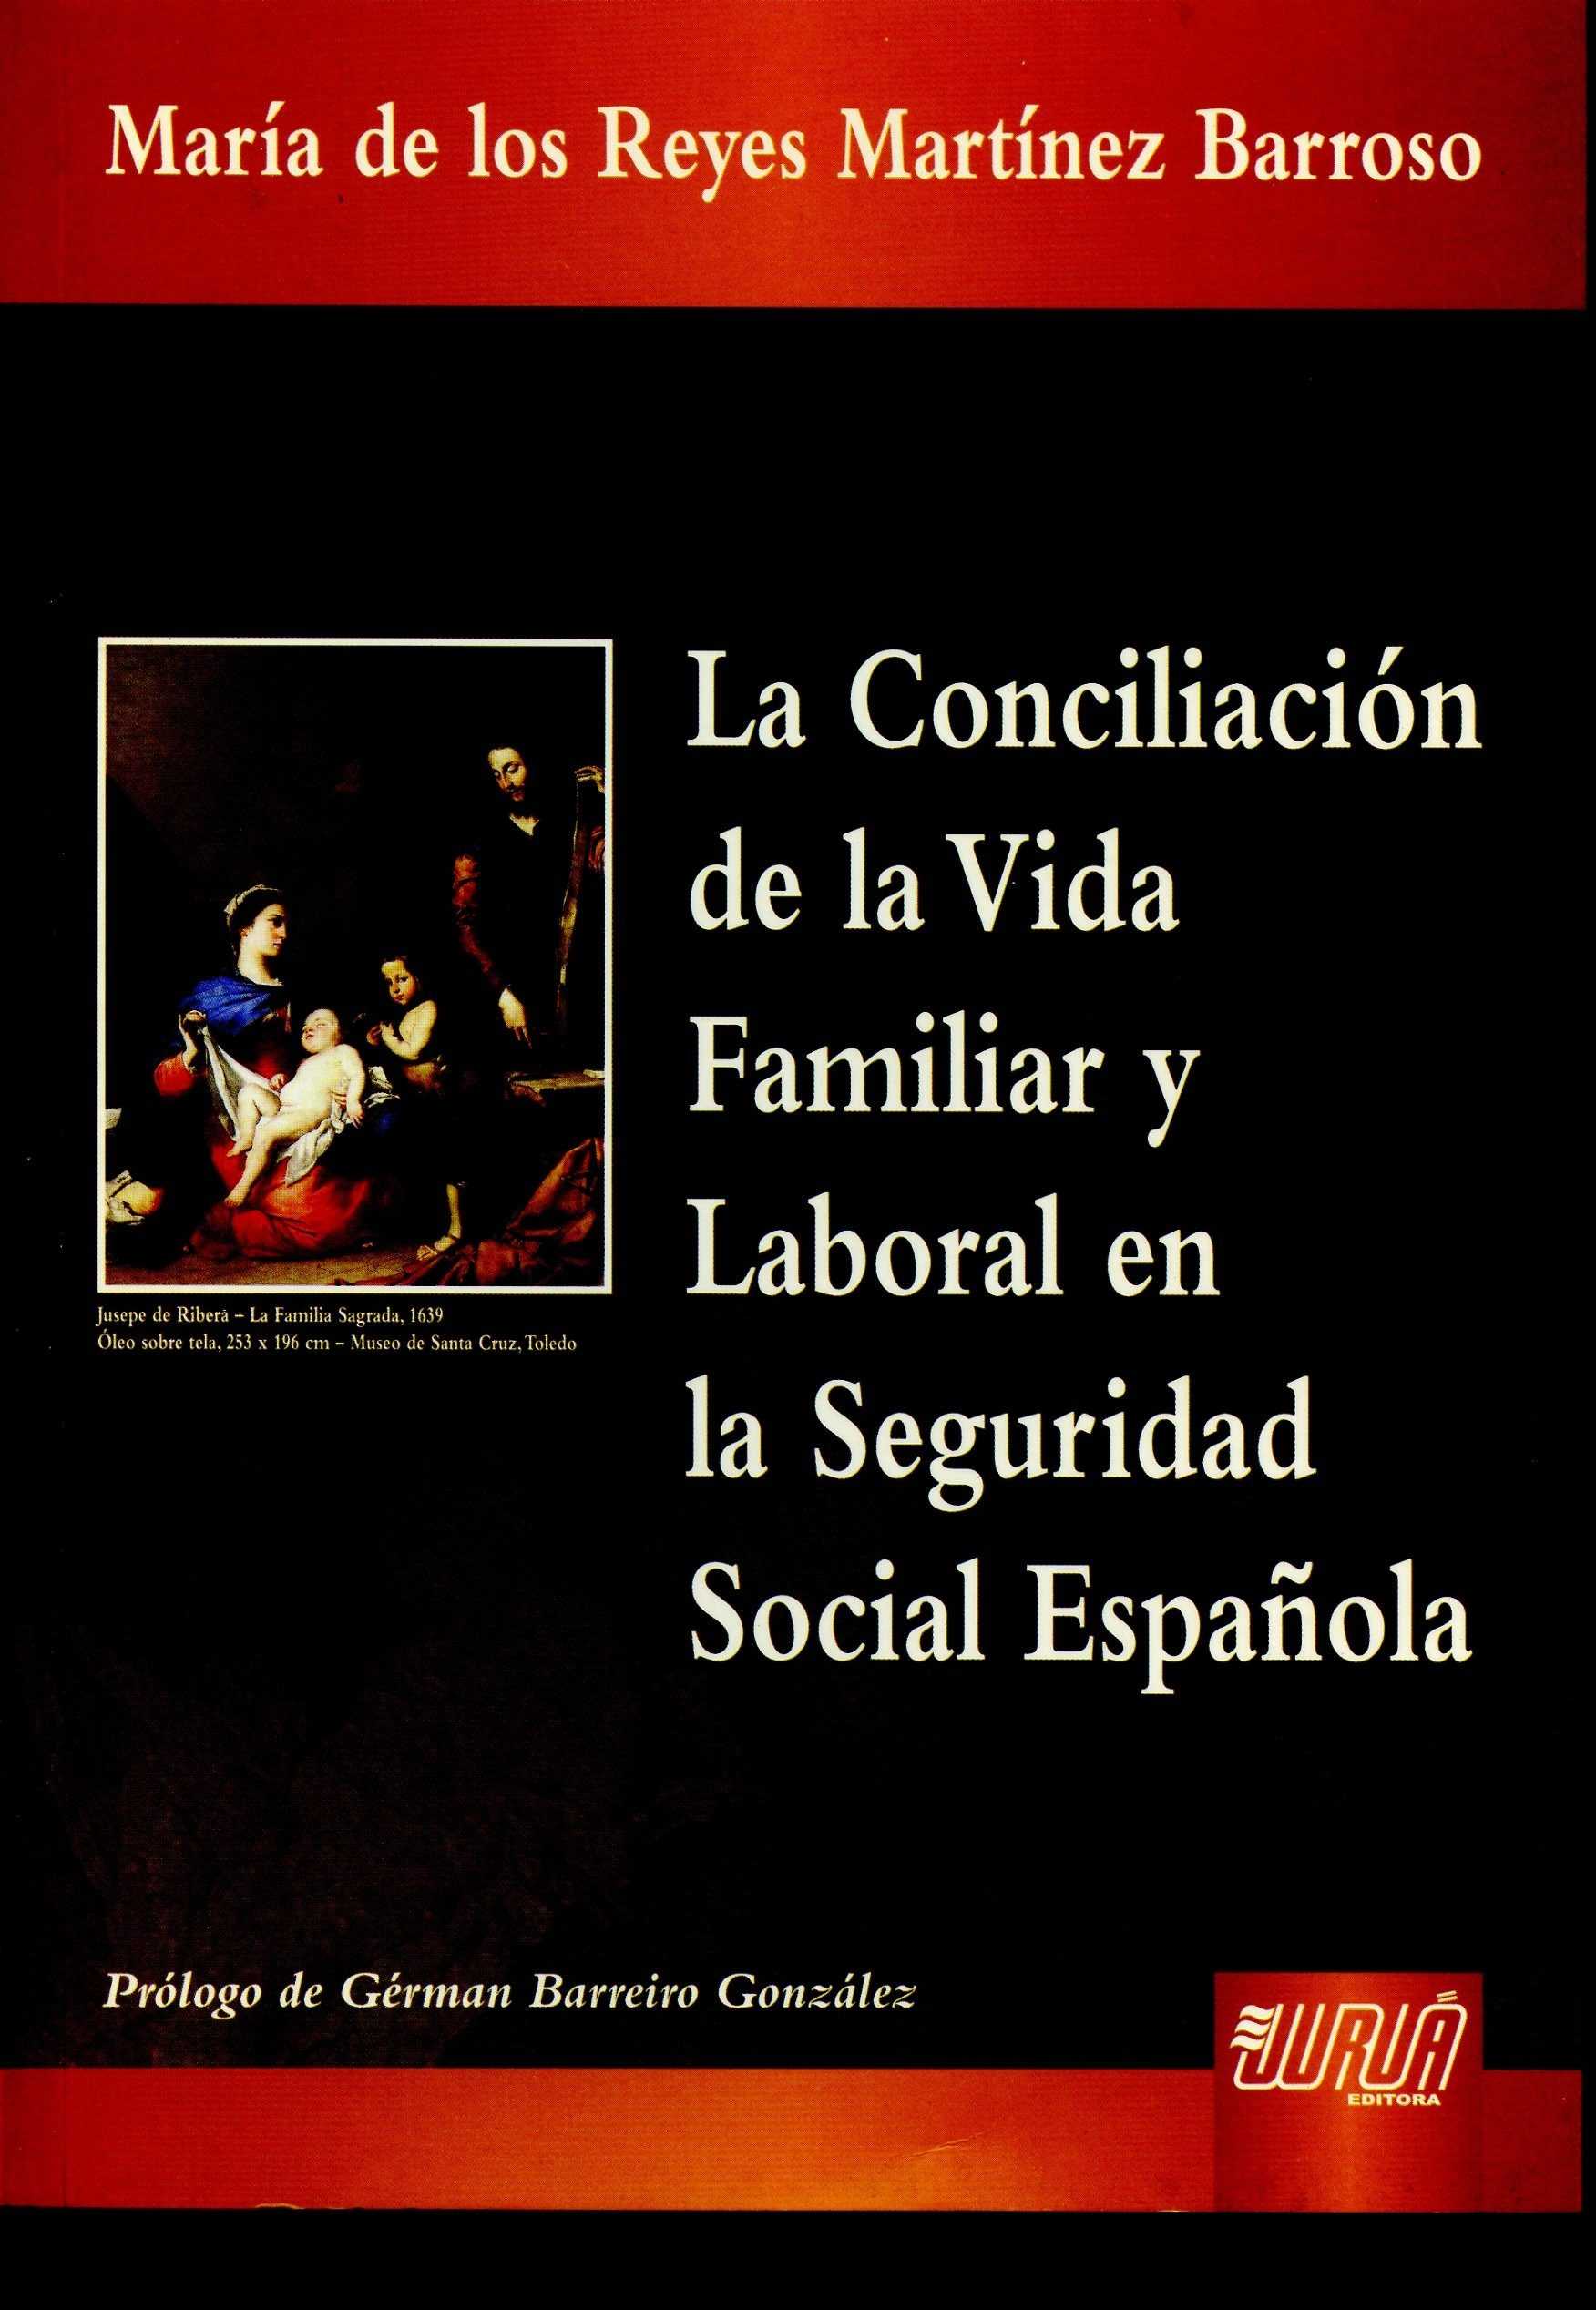 La conciliación de la vida familiar y laboral en la Seguridad Social Española